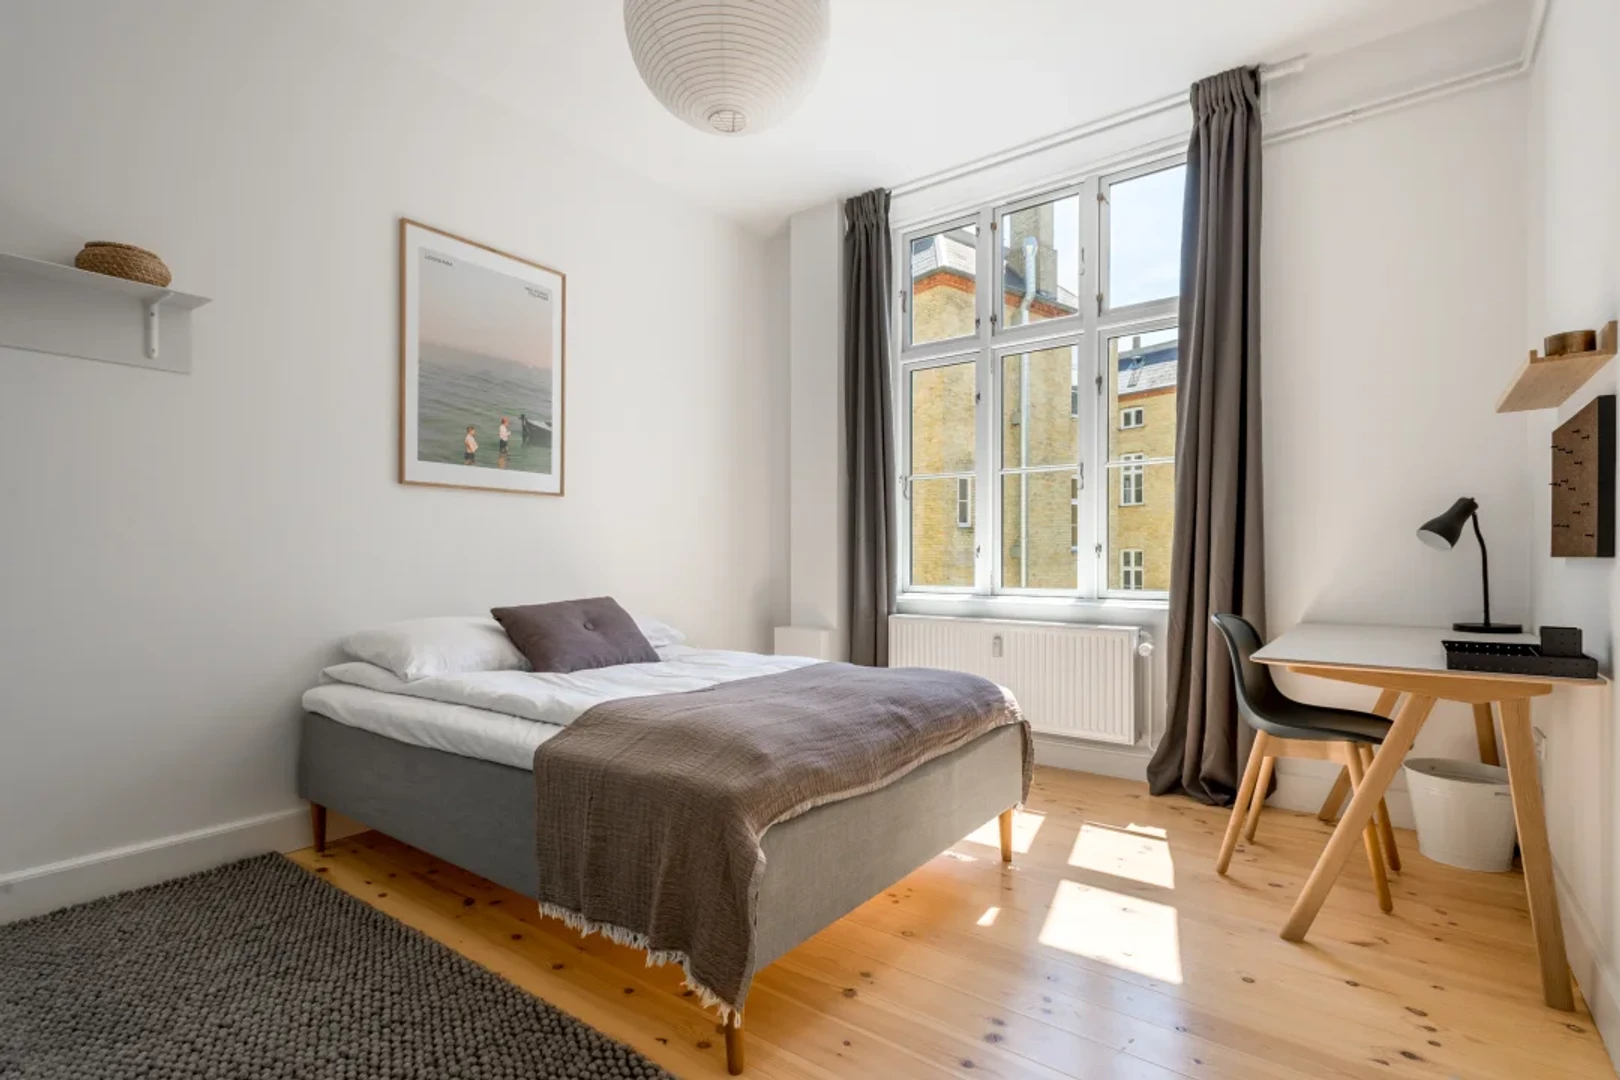 Alquiler de habitación en piso compartido en københavn